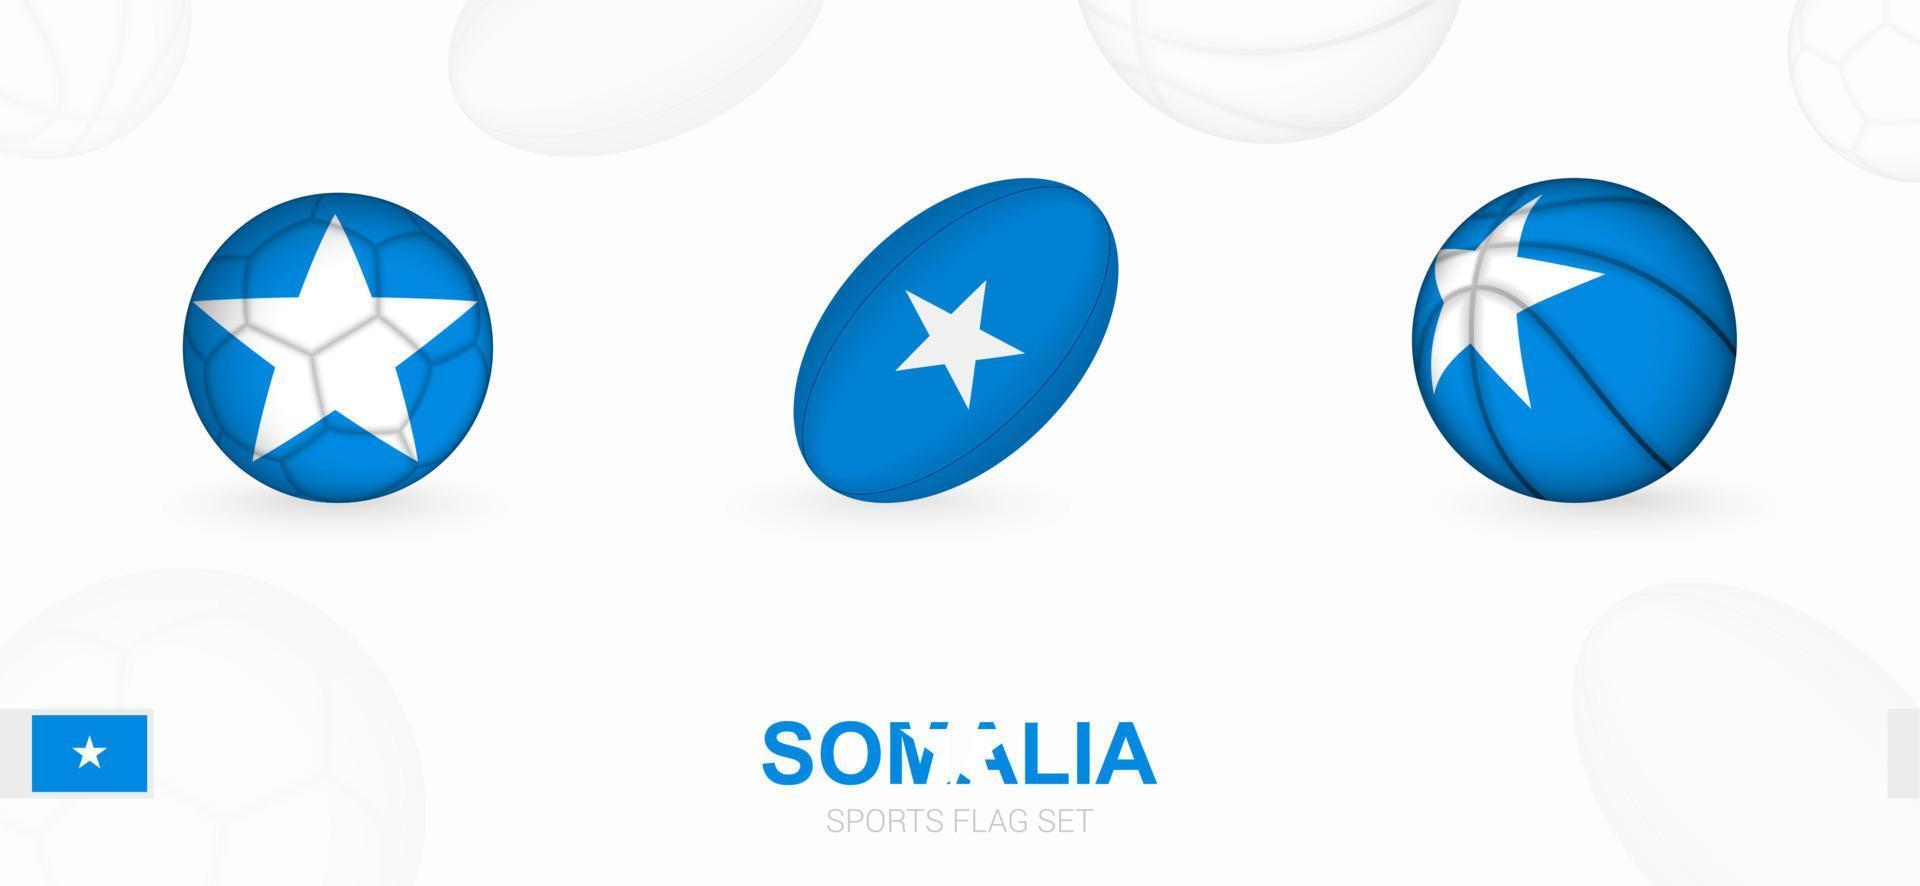 Sport Symbole zum Fußball, Rugby und Basketball mit das Flagge von Somalia. vektor